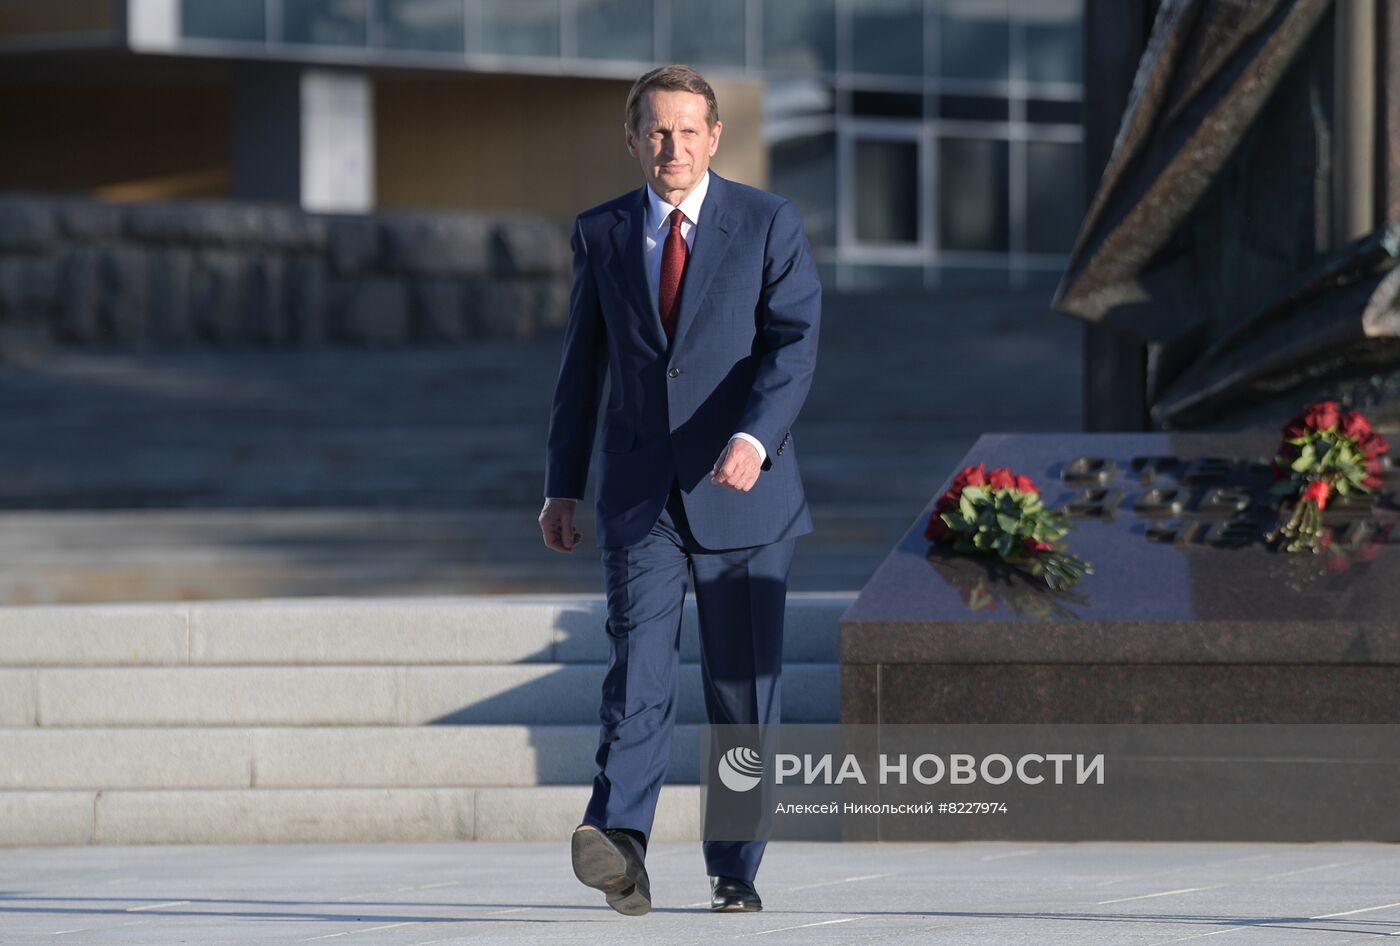 Директор СВР С. Нарышкин возложил цветы к памятнику разведчикам-нелегалам